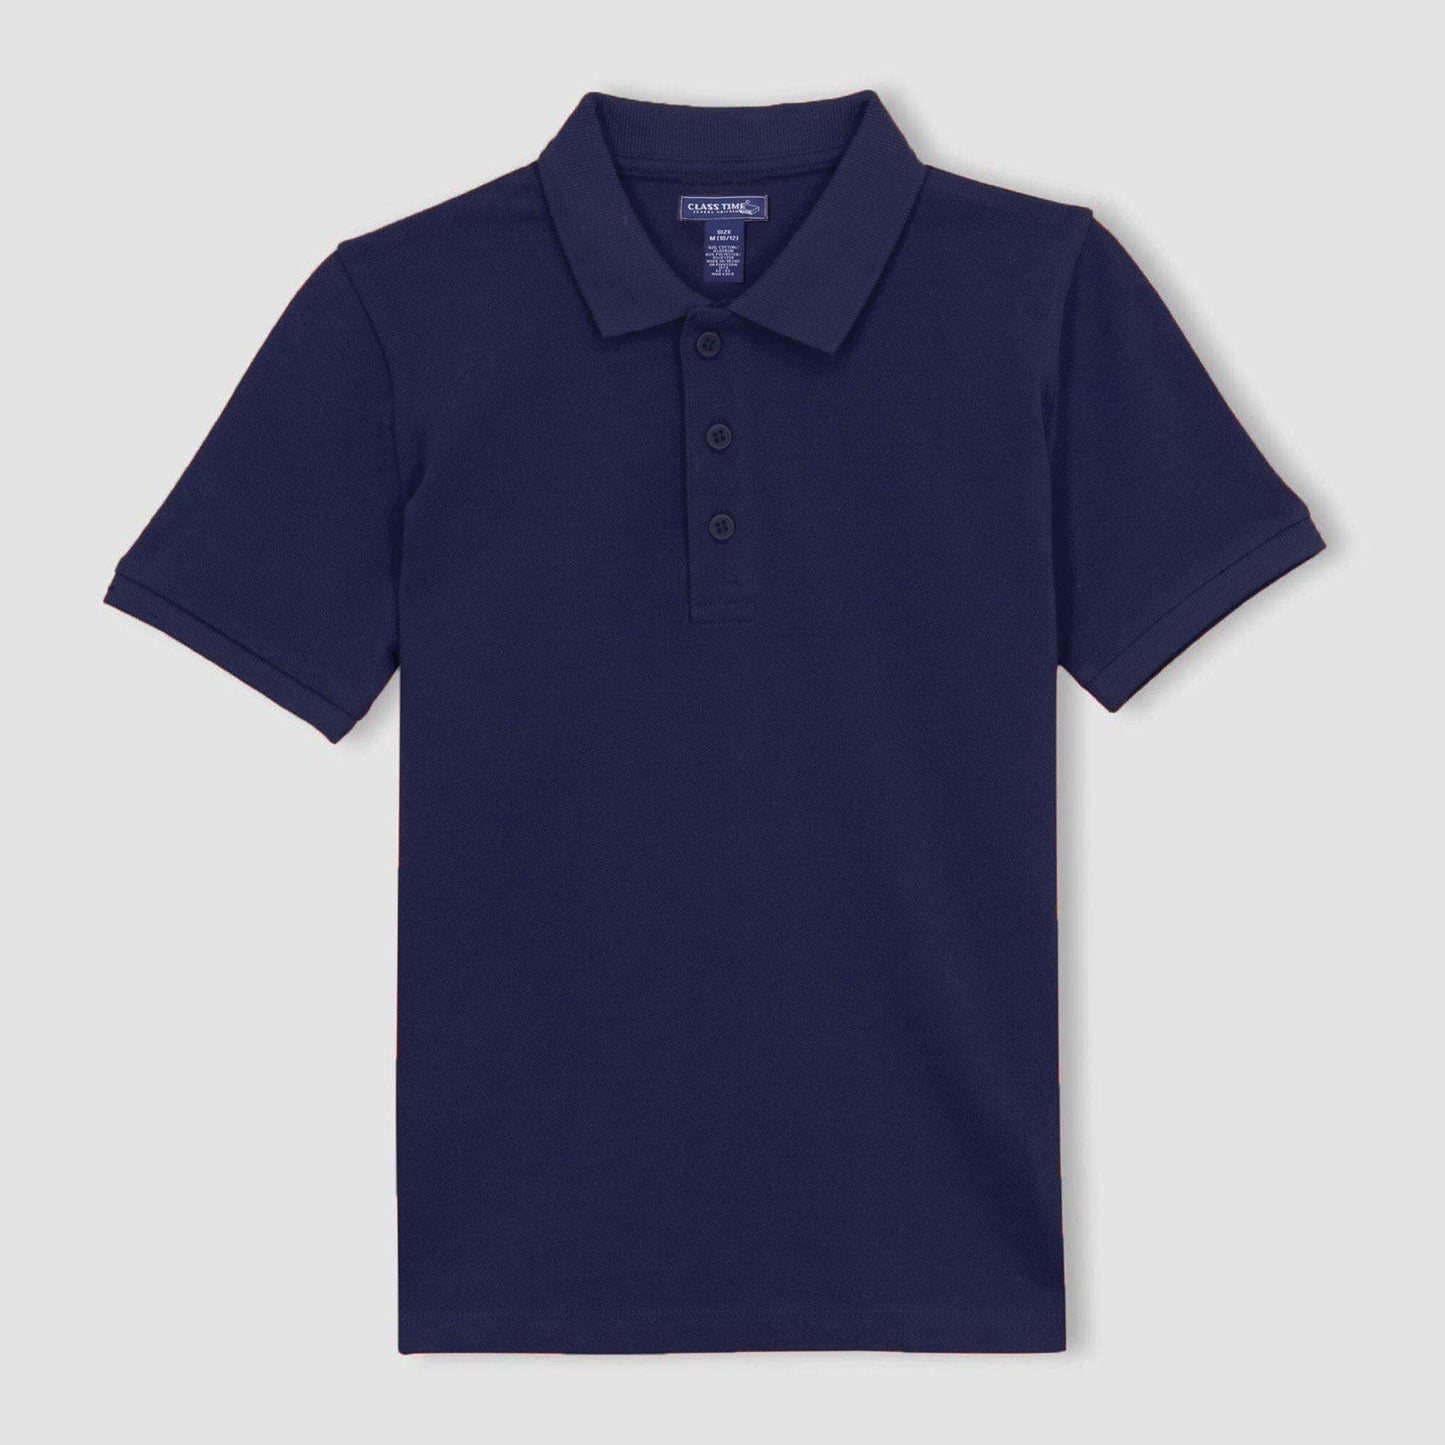 Class Time Boy's Short Sleeve Pique Polo Shirt Navy